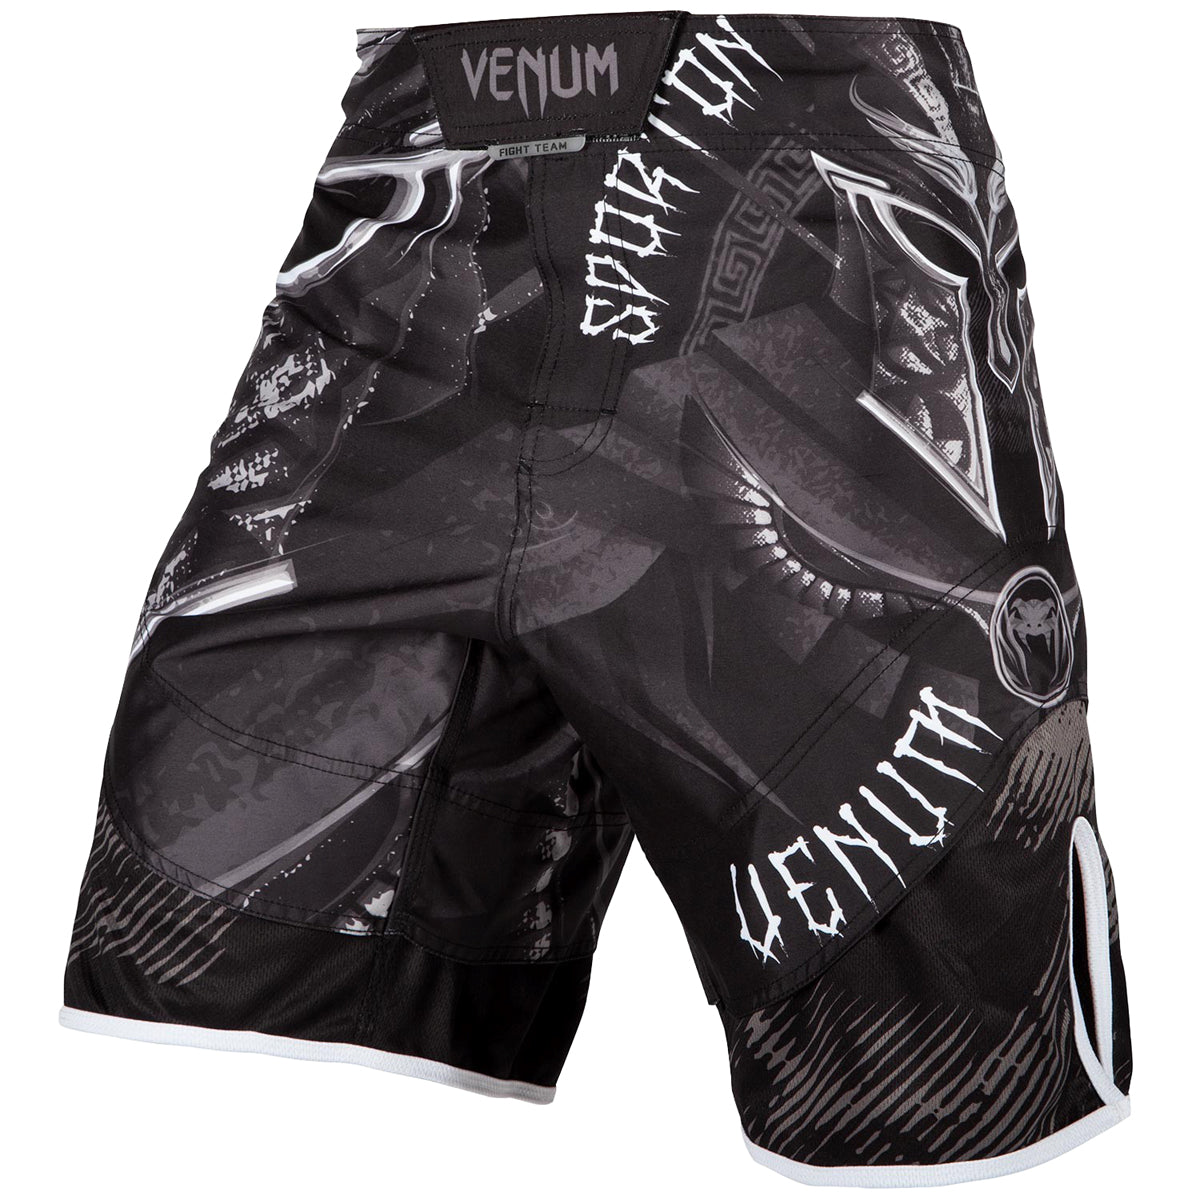 Venum Gladiator 3.0 MMA Fight Shorts - Black/White Venum